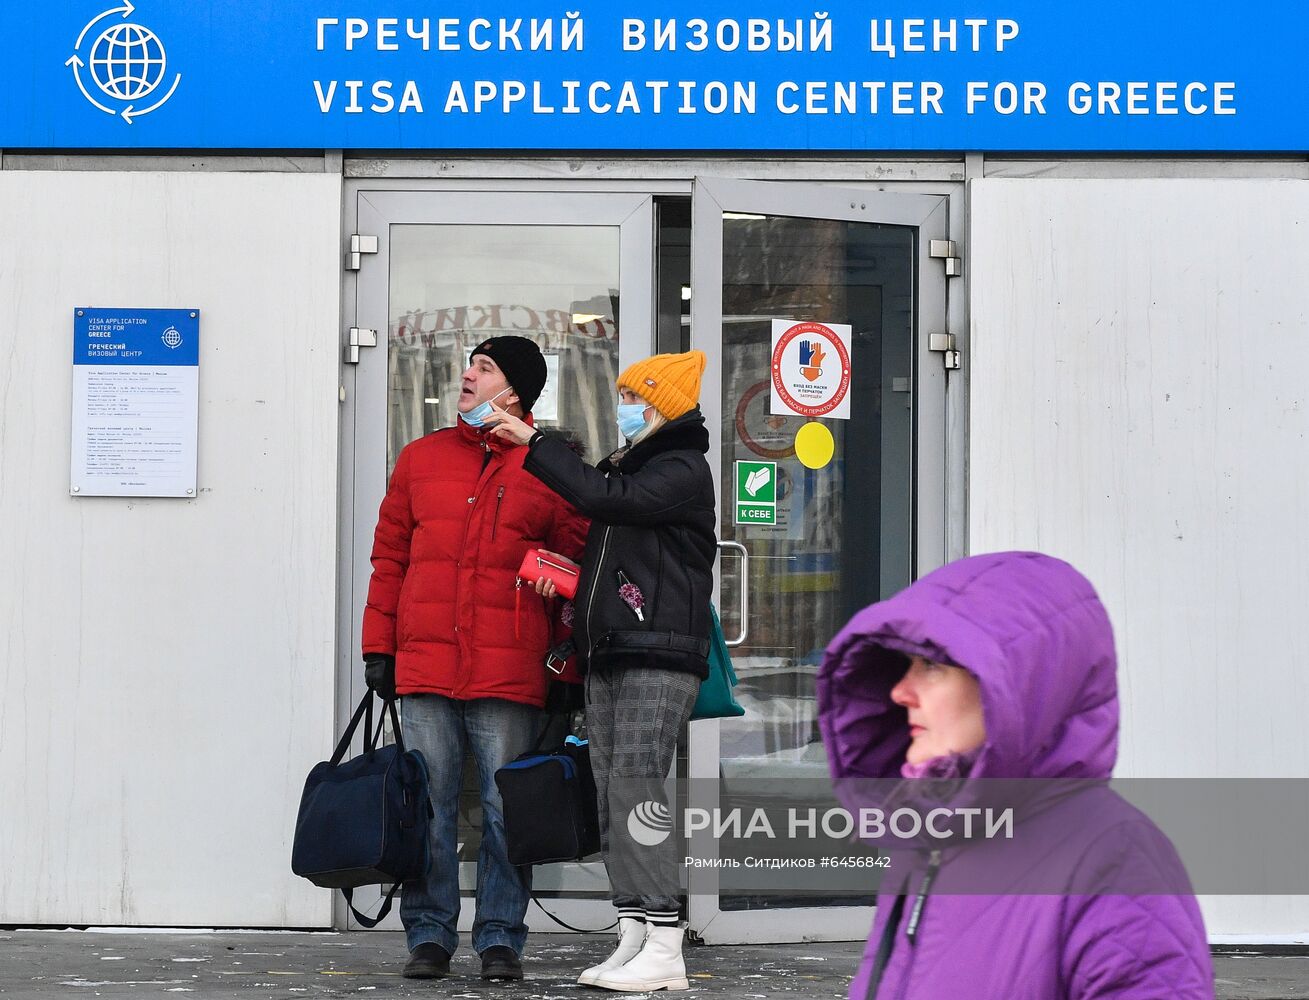 Визовый центр Греции в Москве